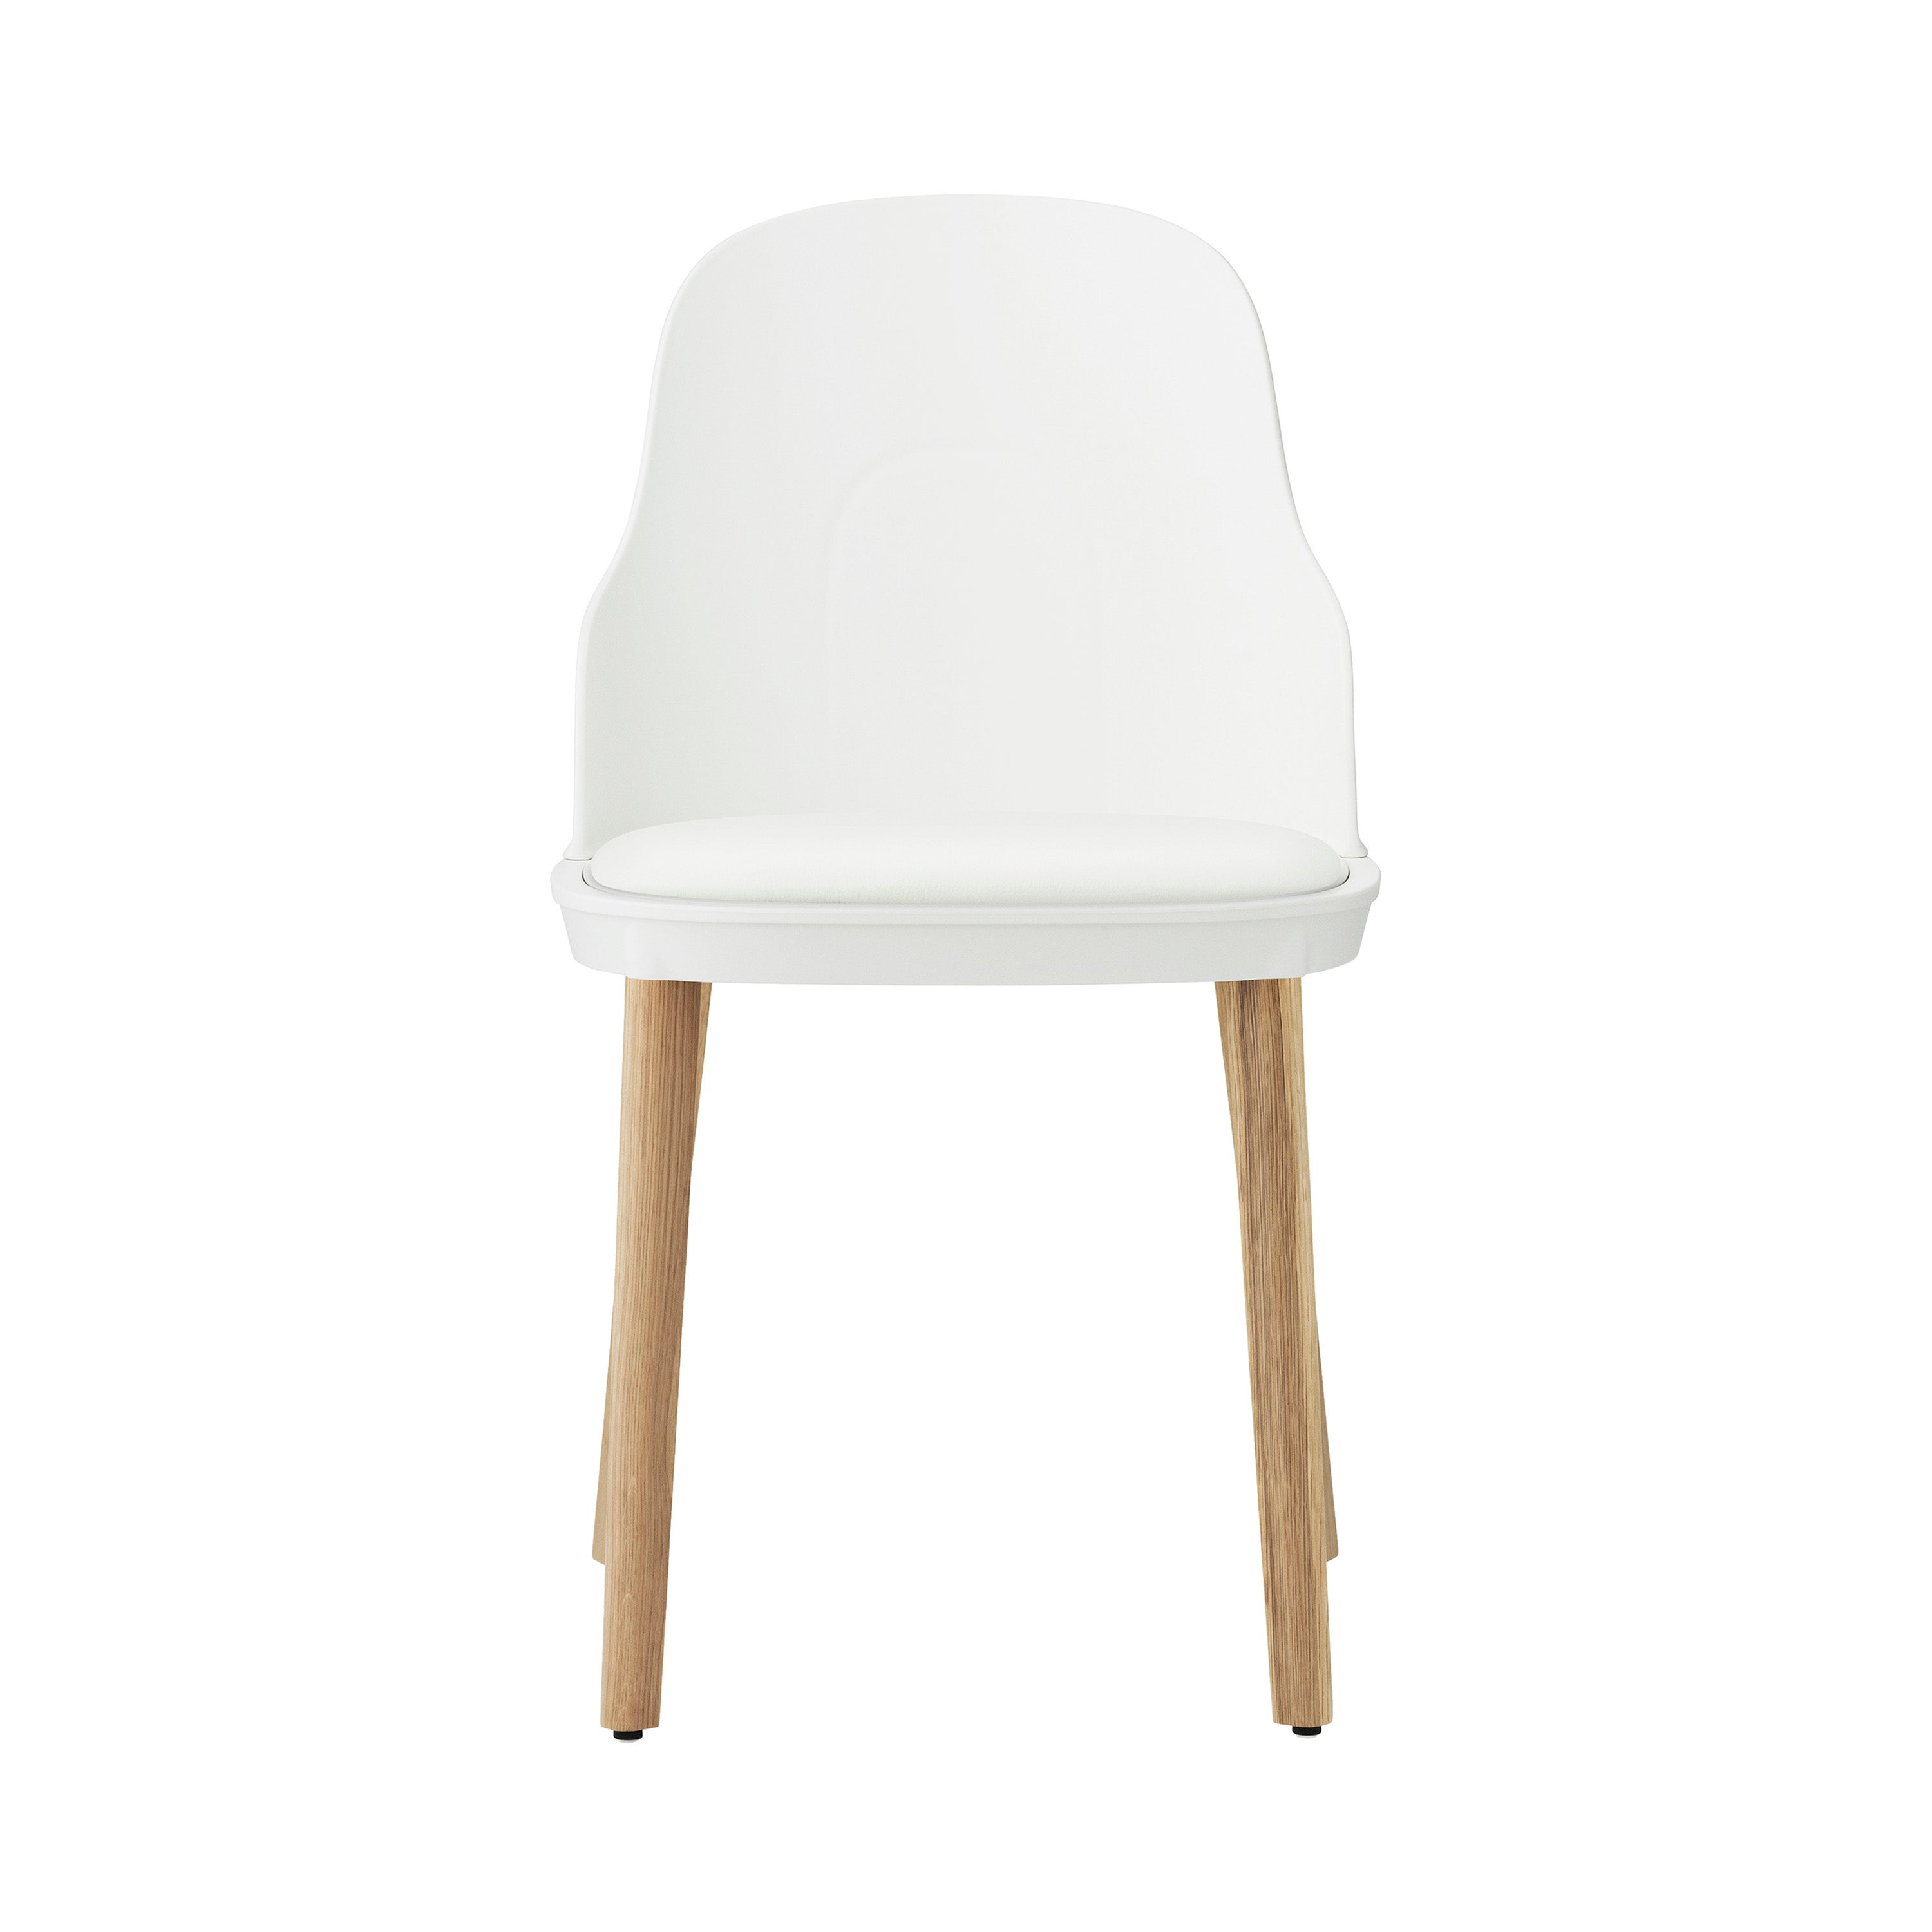 Allez Chair: Upholstered + White + Oak